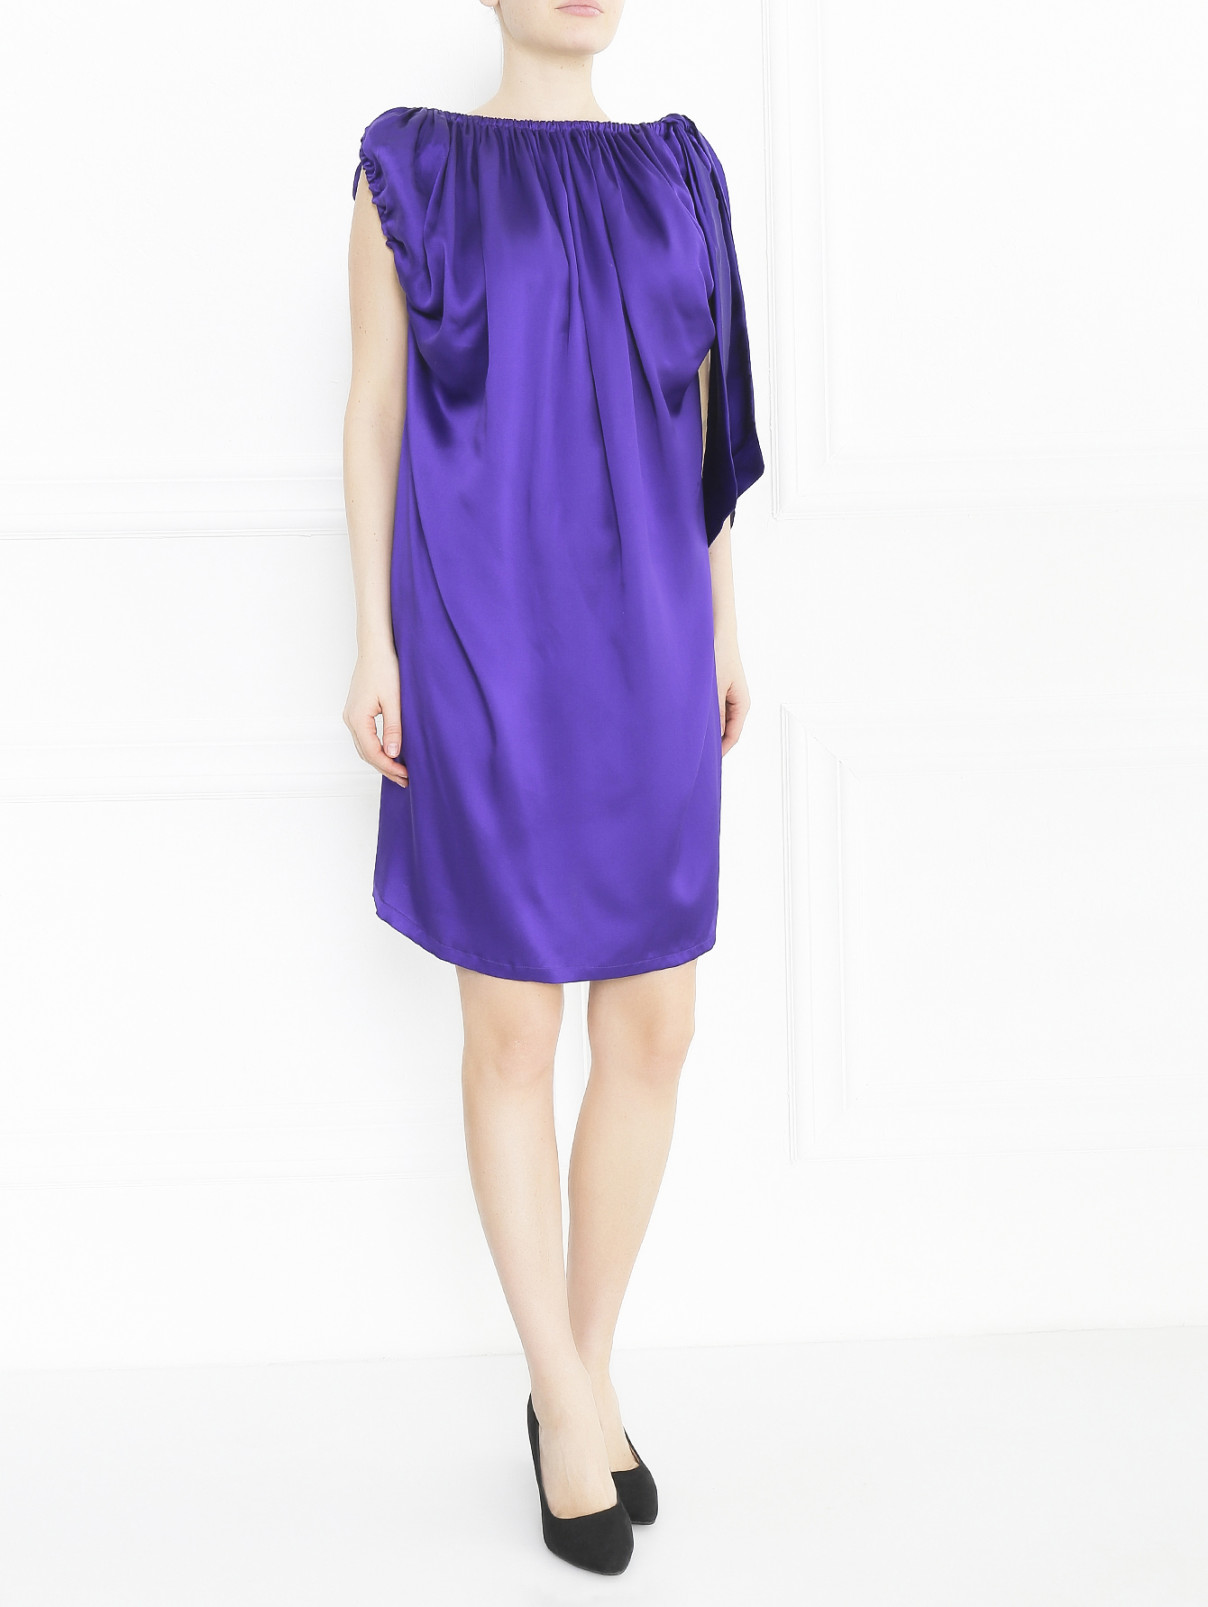 Платье-мини из шелка с драпировкой Anglomania by V.Westwood  –  Модель Общий вид  – Цвет:  Фиолетовый